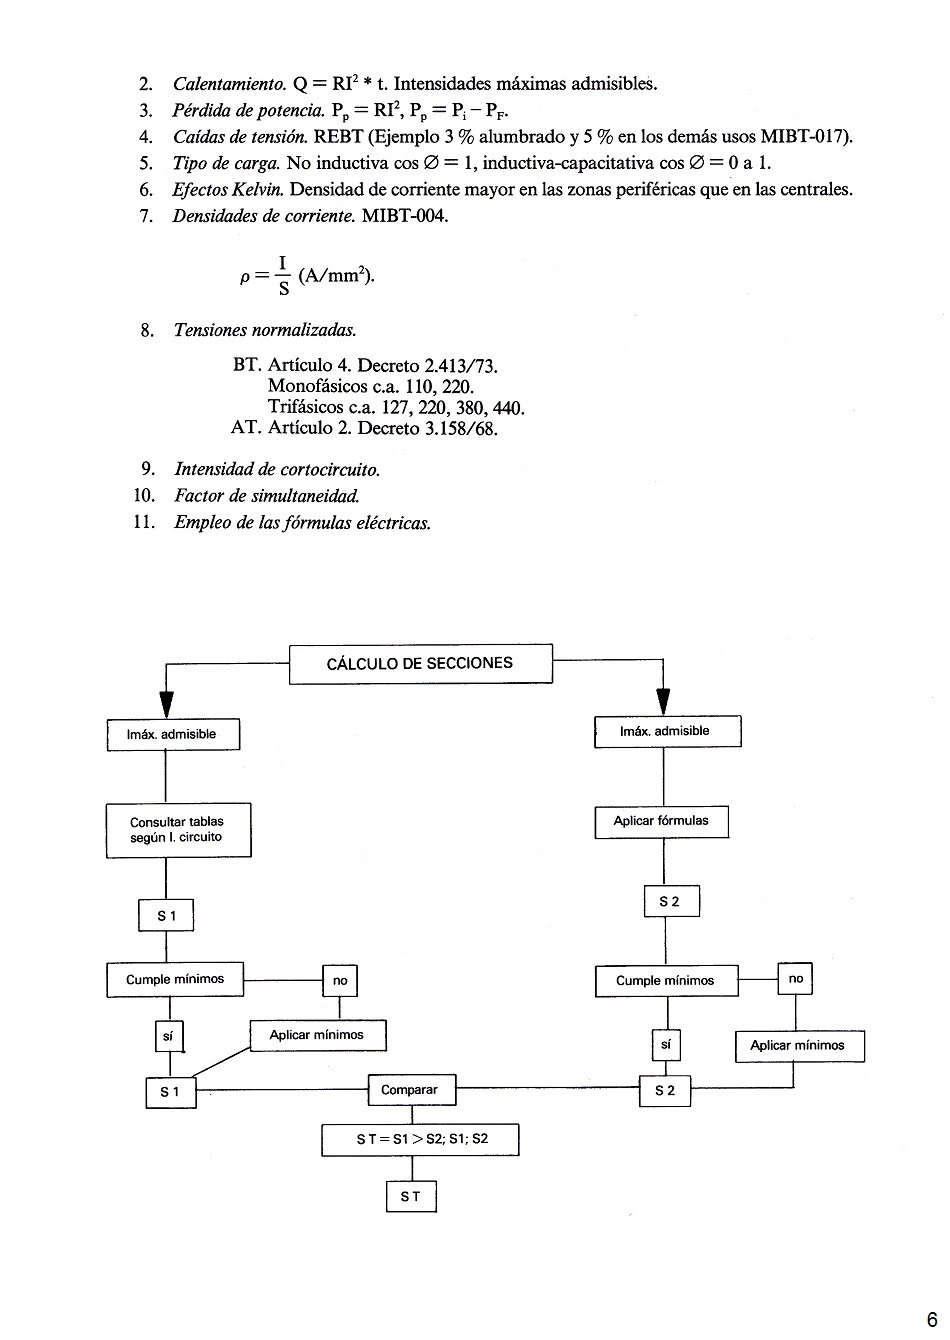 Conceptos generales de electricidad y fórmulas eléctricas. Página 06